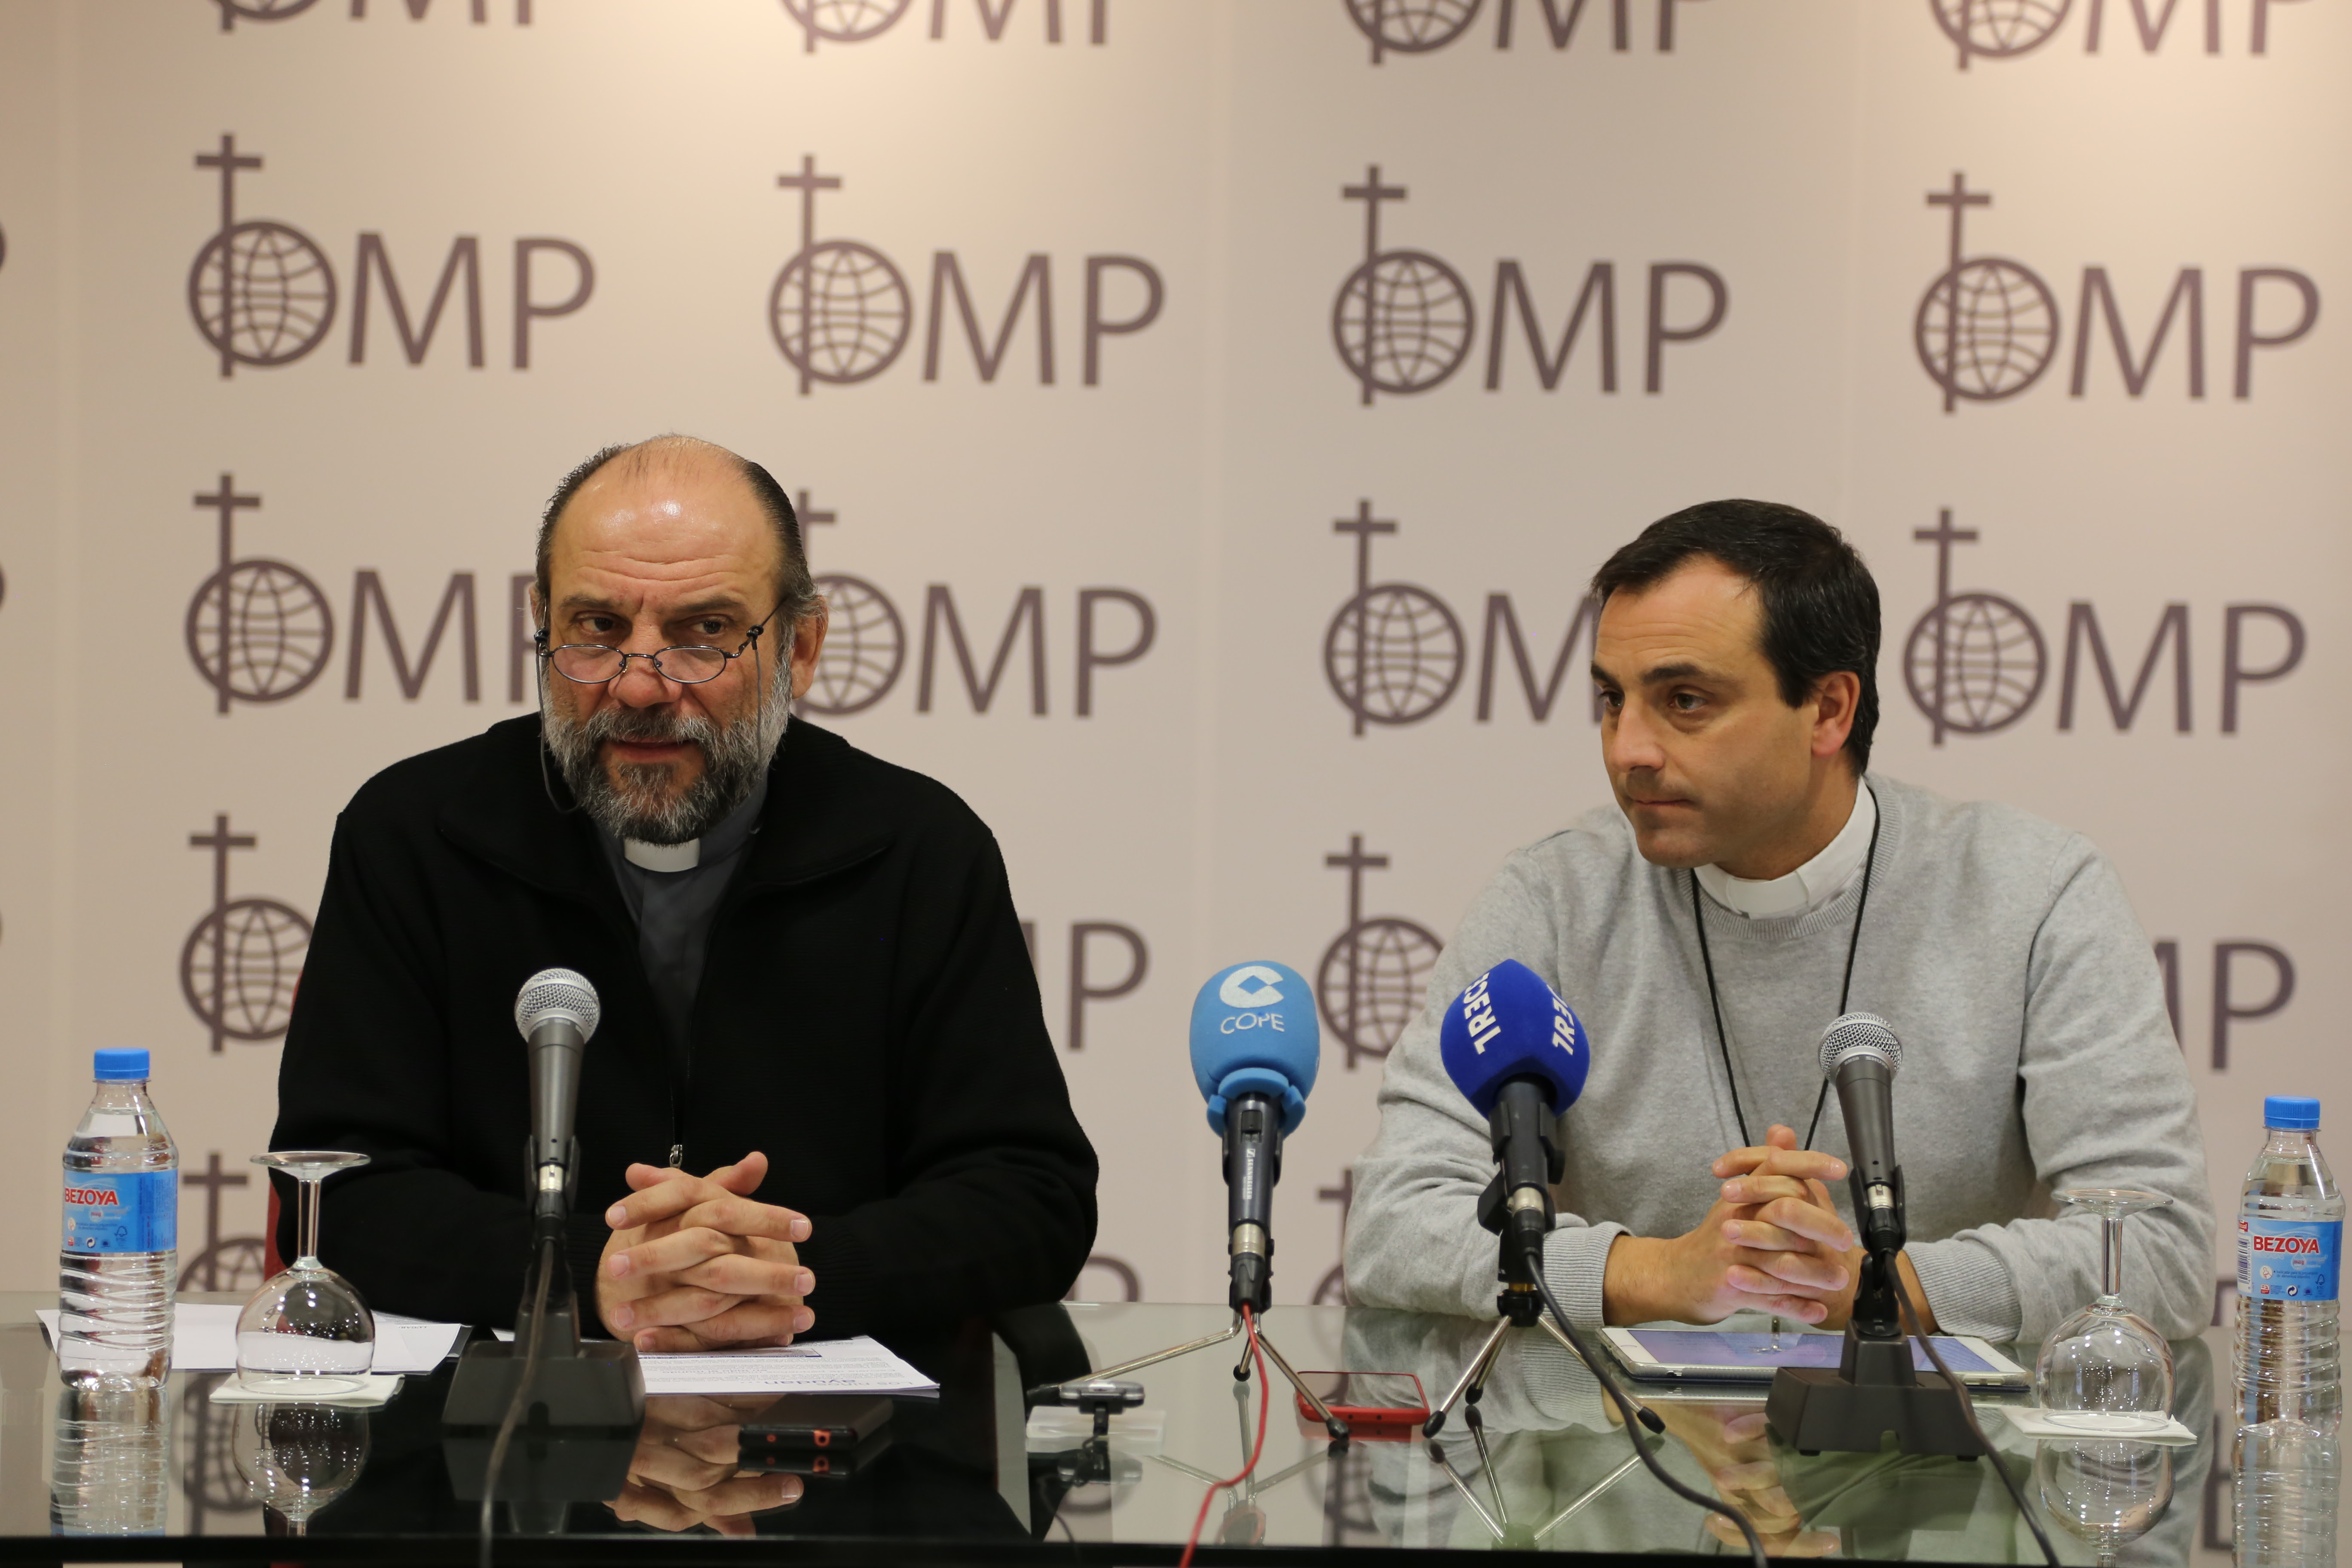 A la izquierda, José María Calderón, director nacional de OMP España;  y a la derecha, Mario León Dorado,  prefecto apostólico en Sahara Occidental.